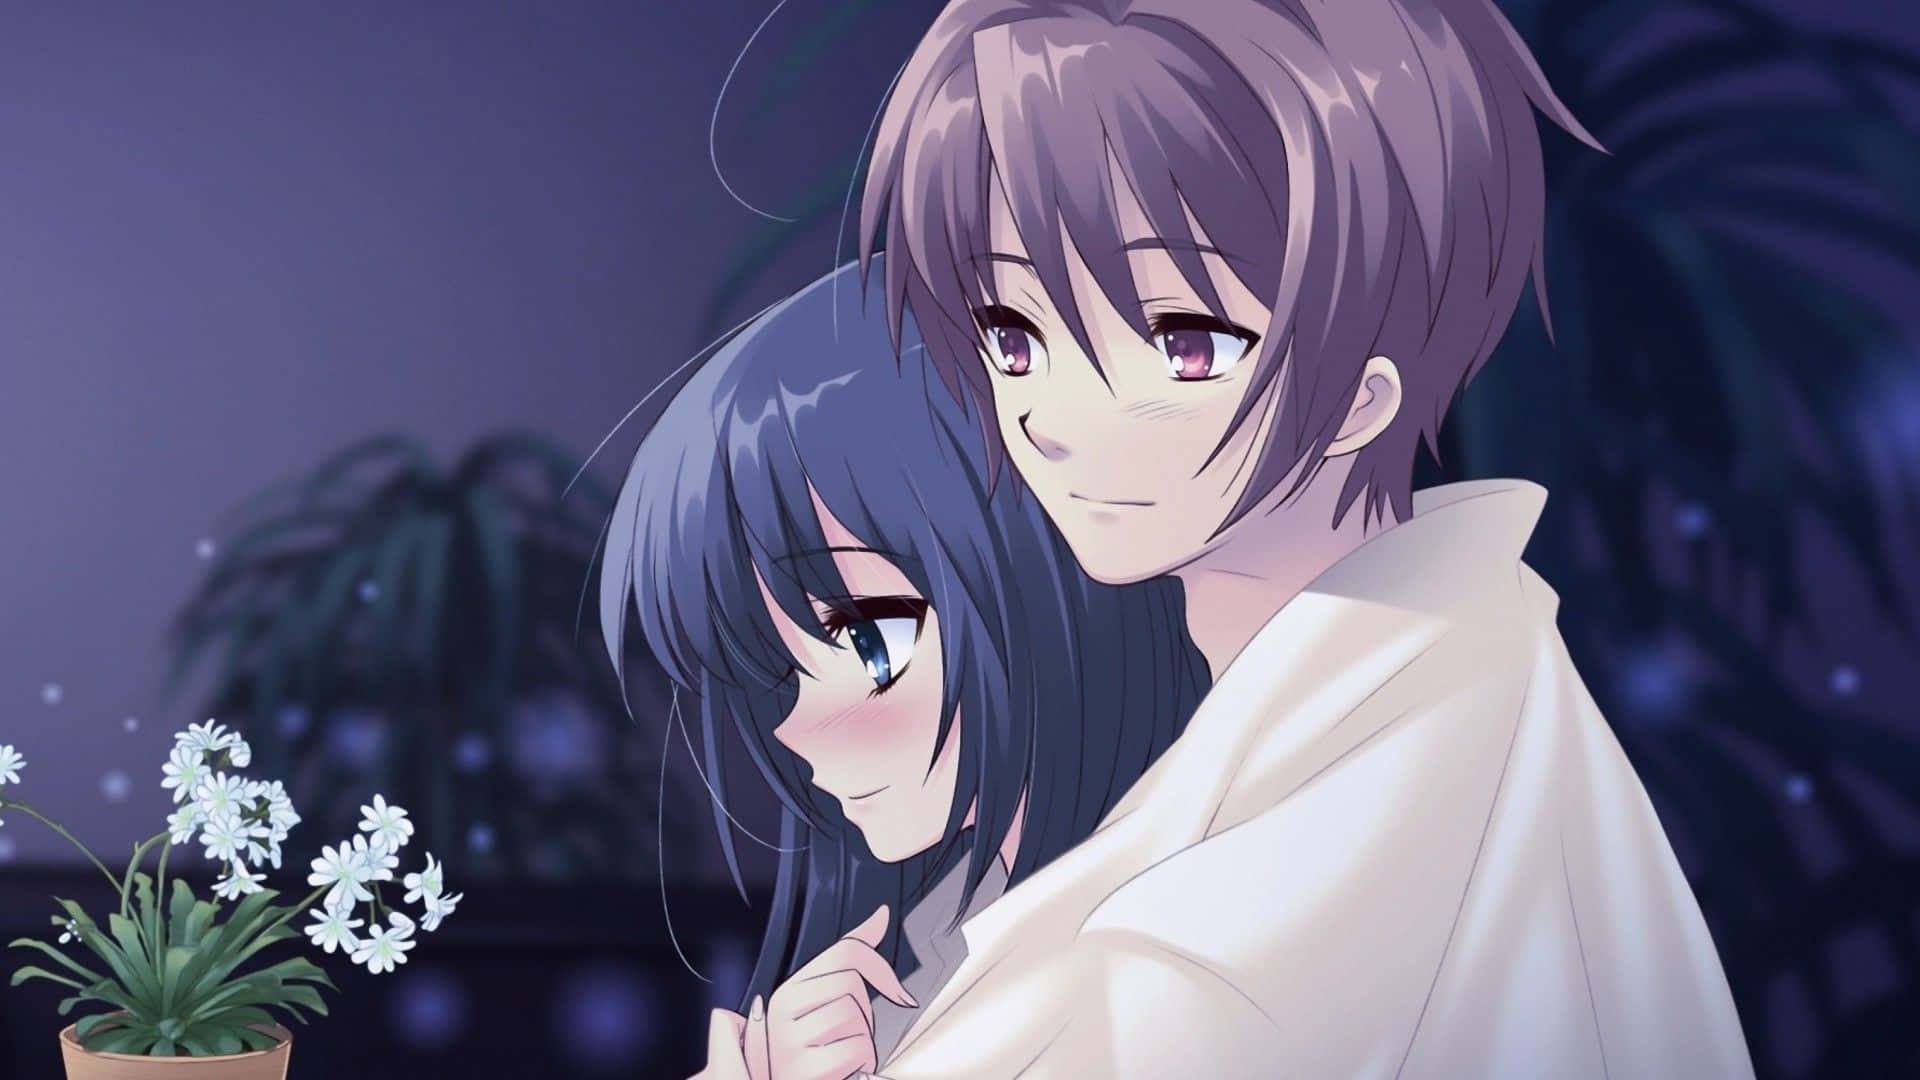 Cute Anime Couple Wallpapers HD - PixelsTalk.Net